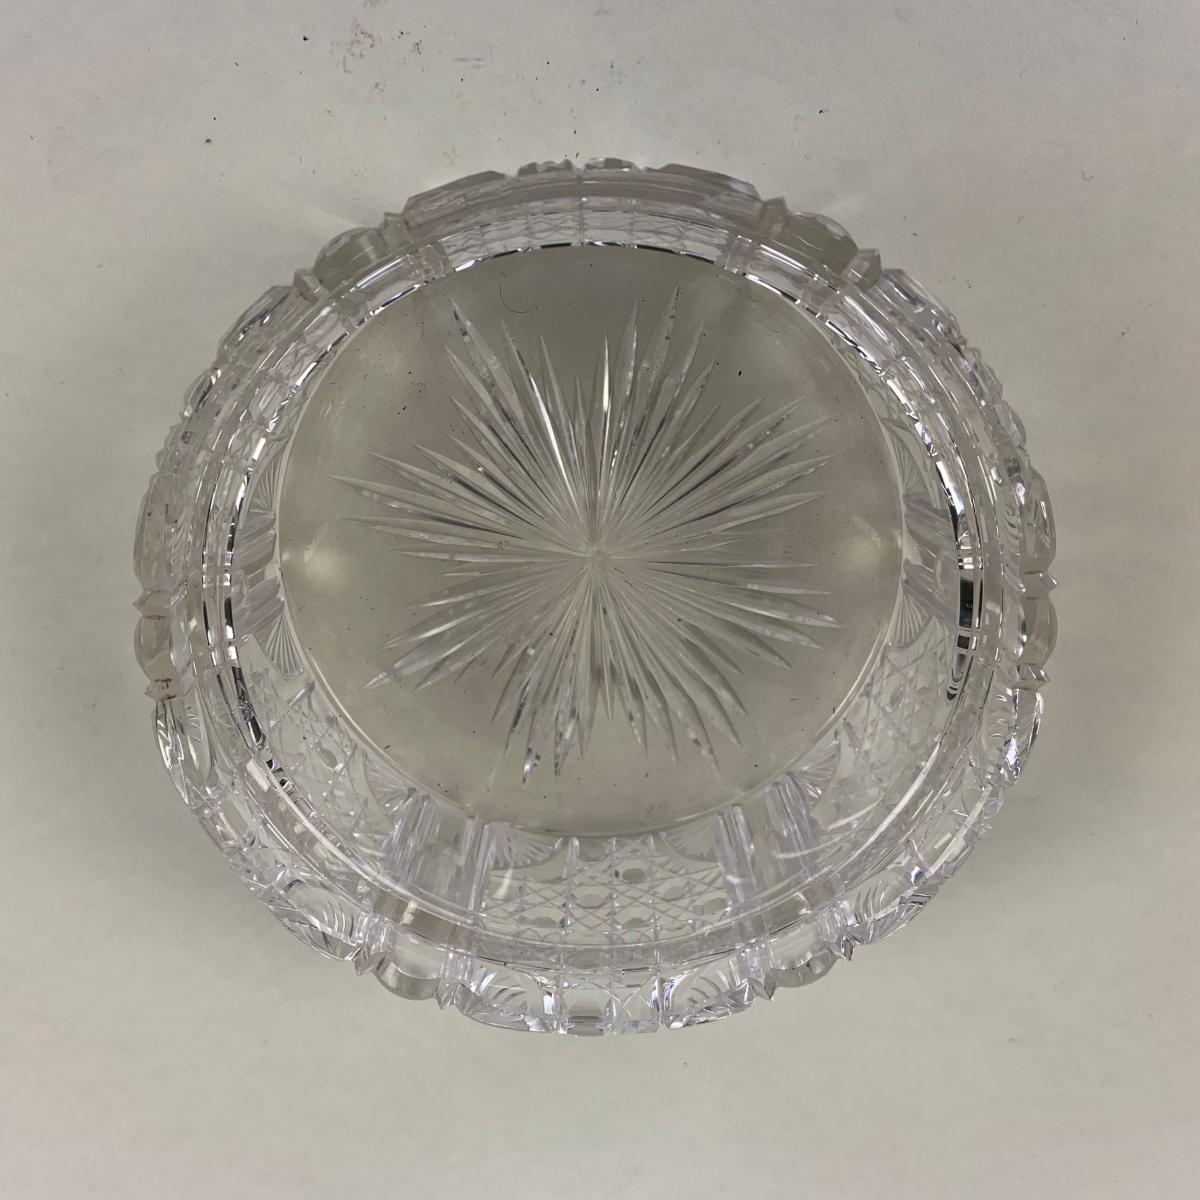 Circular glass Jam/Conserve pot/Jar with silver lid | BADA